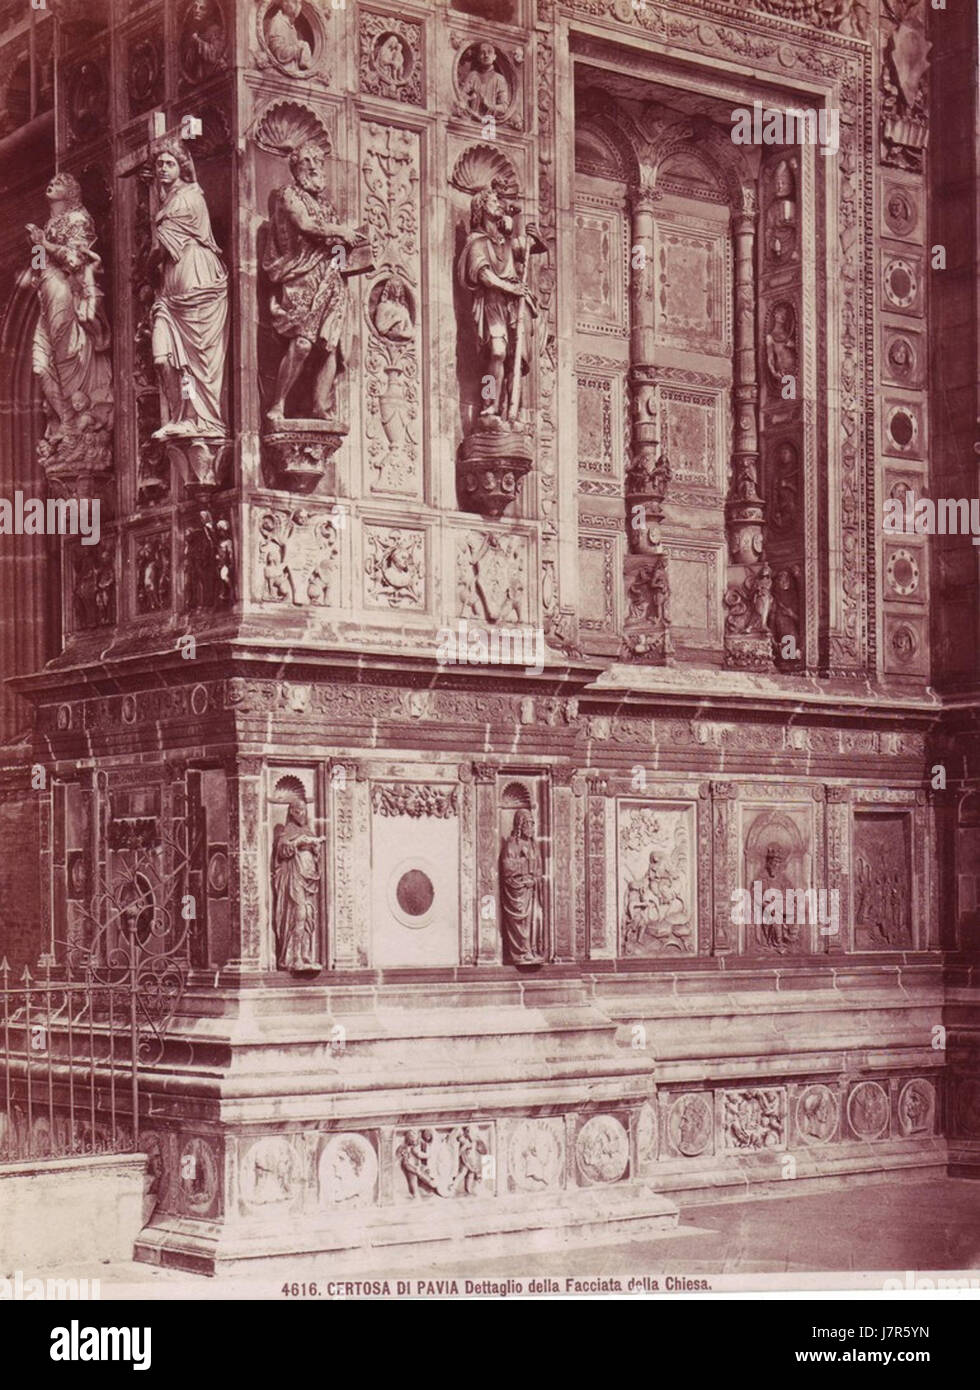 Brogi, Giacomo (1822 1881)   n. 4616   Certosa di Pavia   Dettaglio della facciata della chiesa Stock Photo